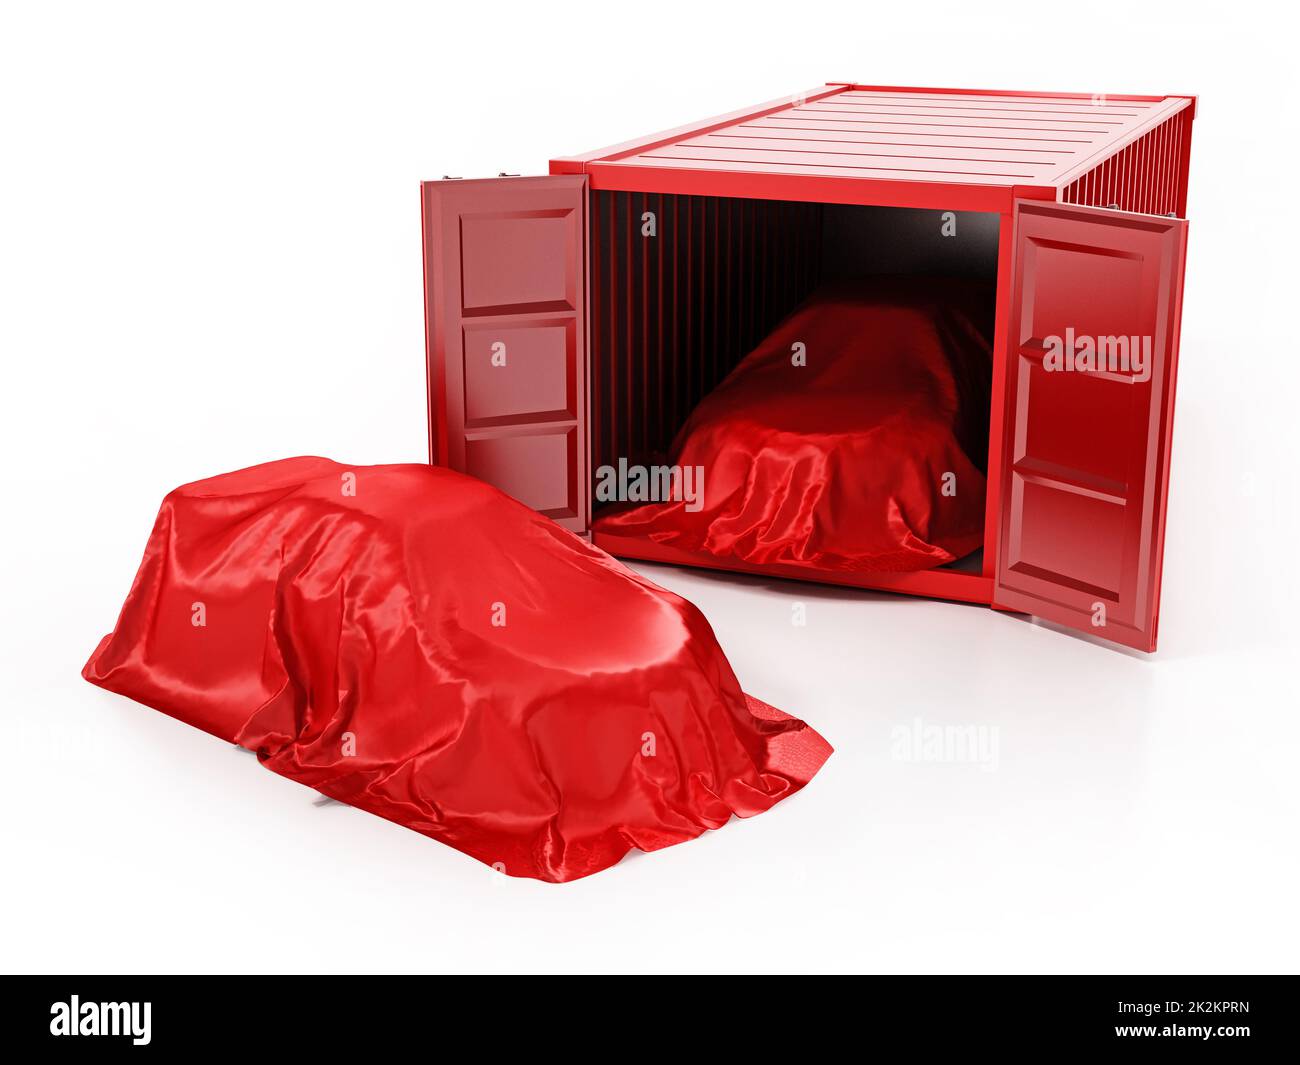 Nouveaux wagons non chargés recouverts de vêtements rouges et d'un conteneur d'expédition isolé sur fond blanc. 3D illustration Banque D'Images